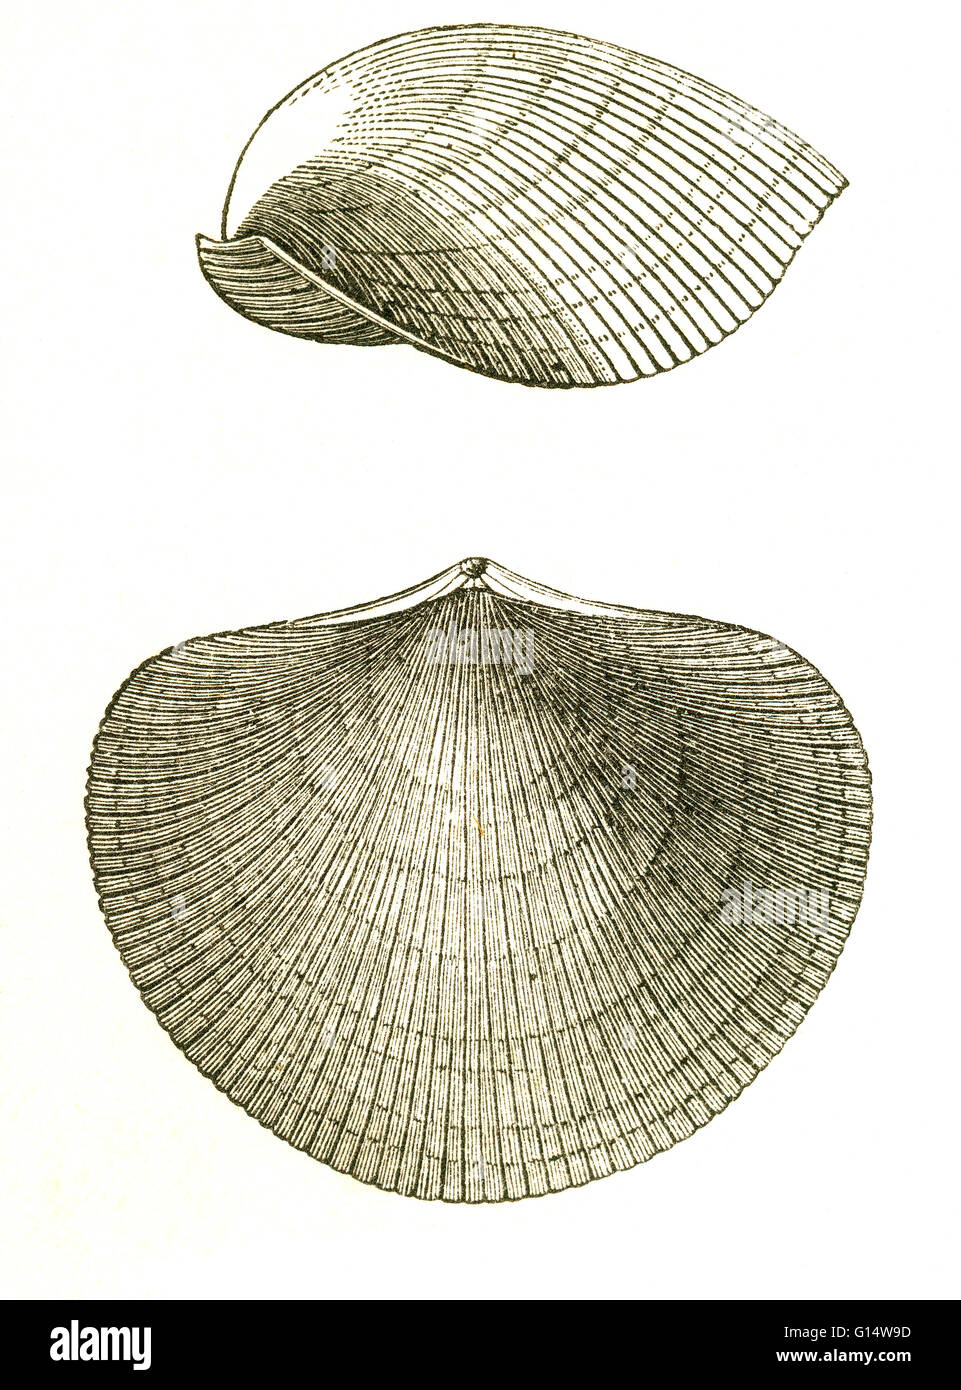 Zwei Ansichten von einer ausgestorbenen Brachiopod (Atrypa Reticularis), die während der Devon lebte.  Illustration von Louis Figuiers die Welt vor der Sintflut, 1867 amerikanische Ausgabe. Stockfoto